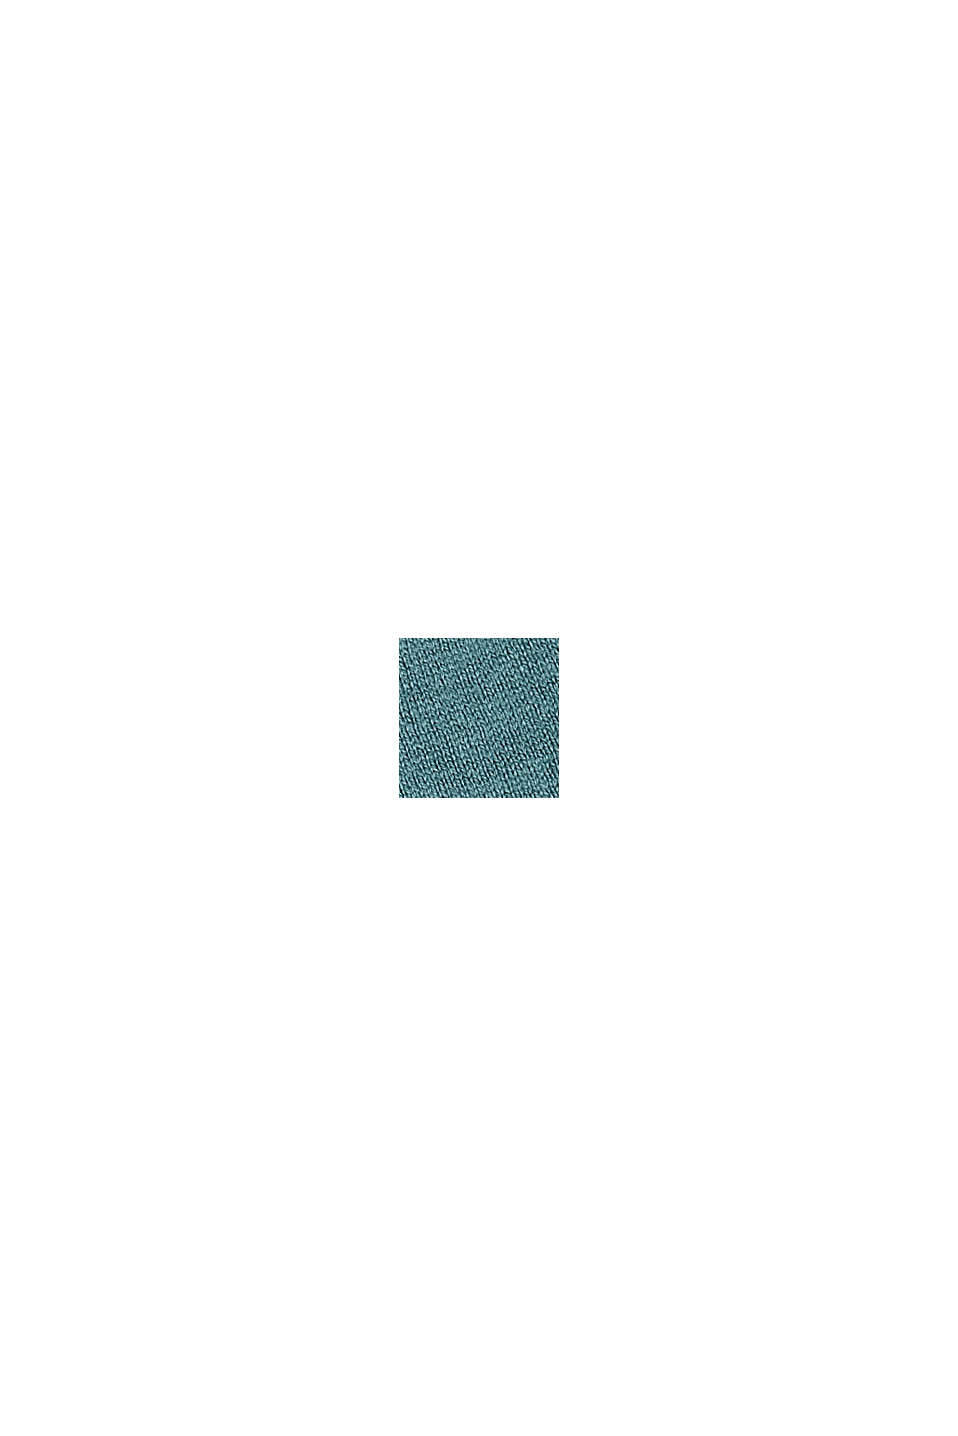 Finmasket strikcardigan af økologisk bomuldsblanding, TEAL BLUE, swatch